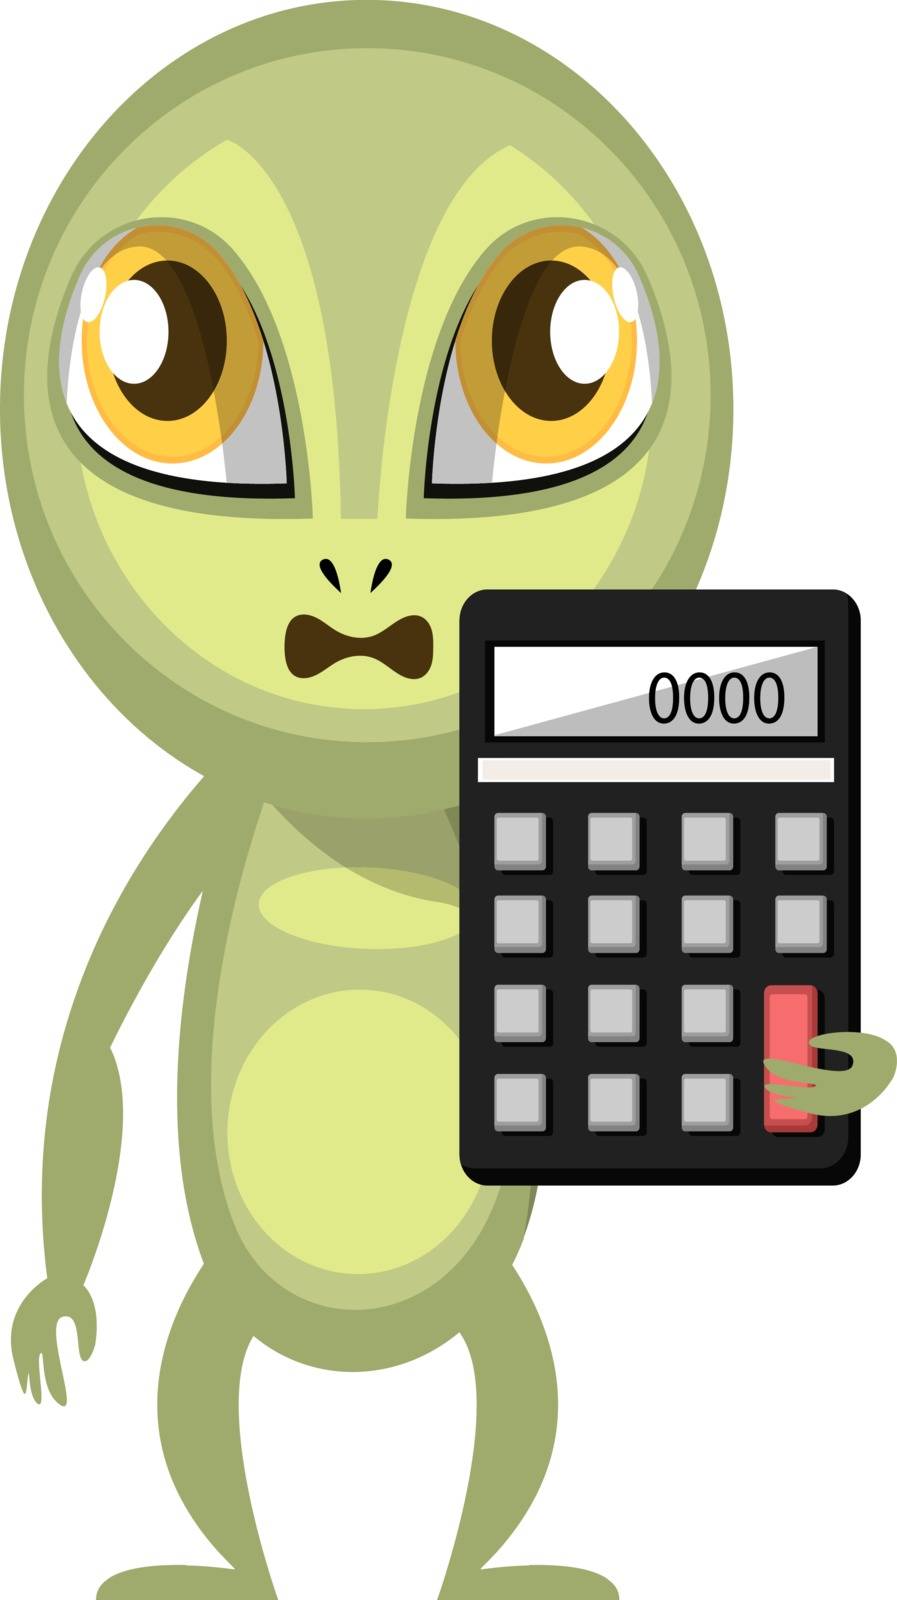 Alien holding calculator, illustration, vector on white background.